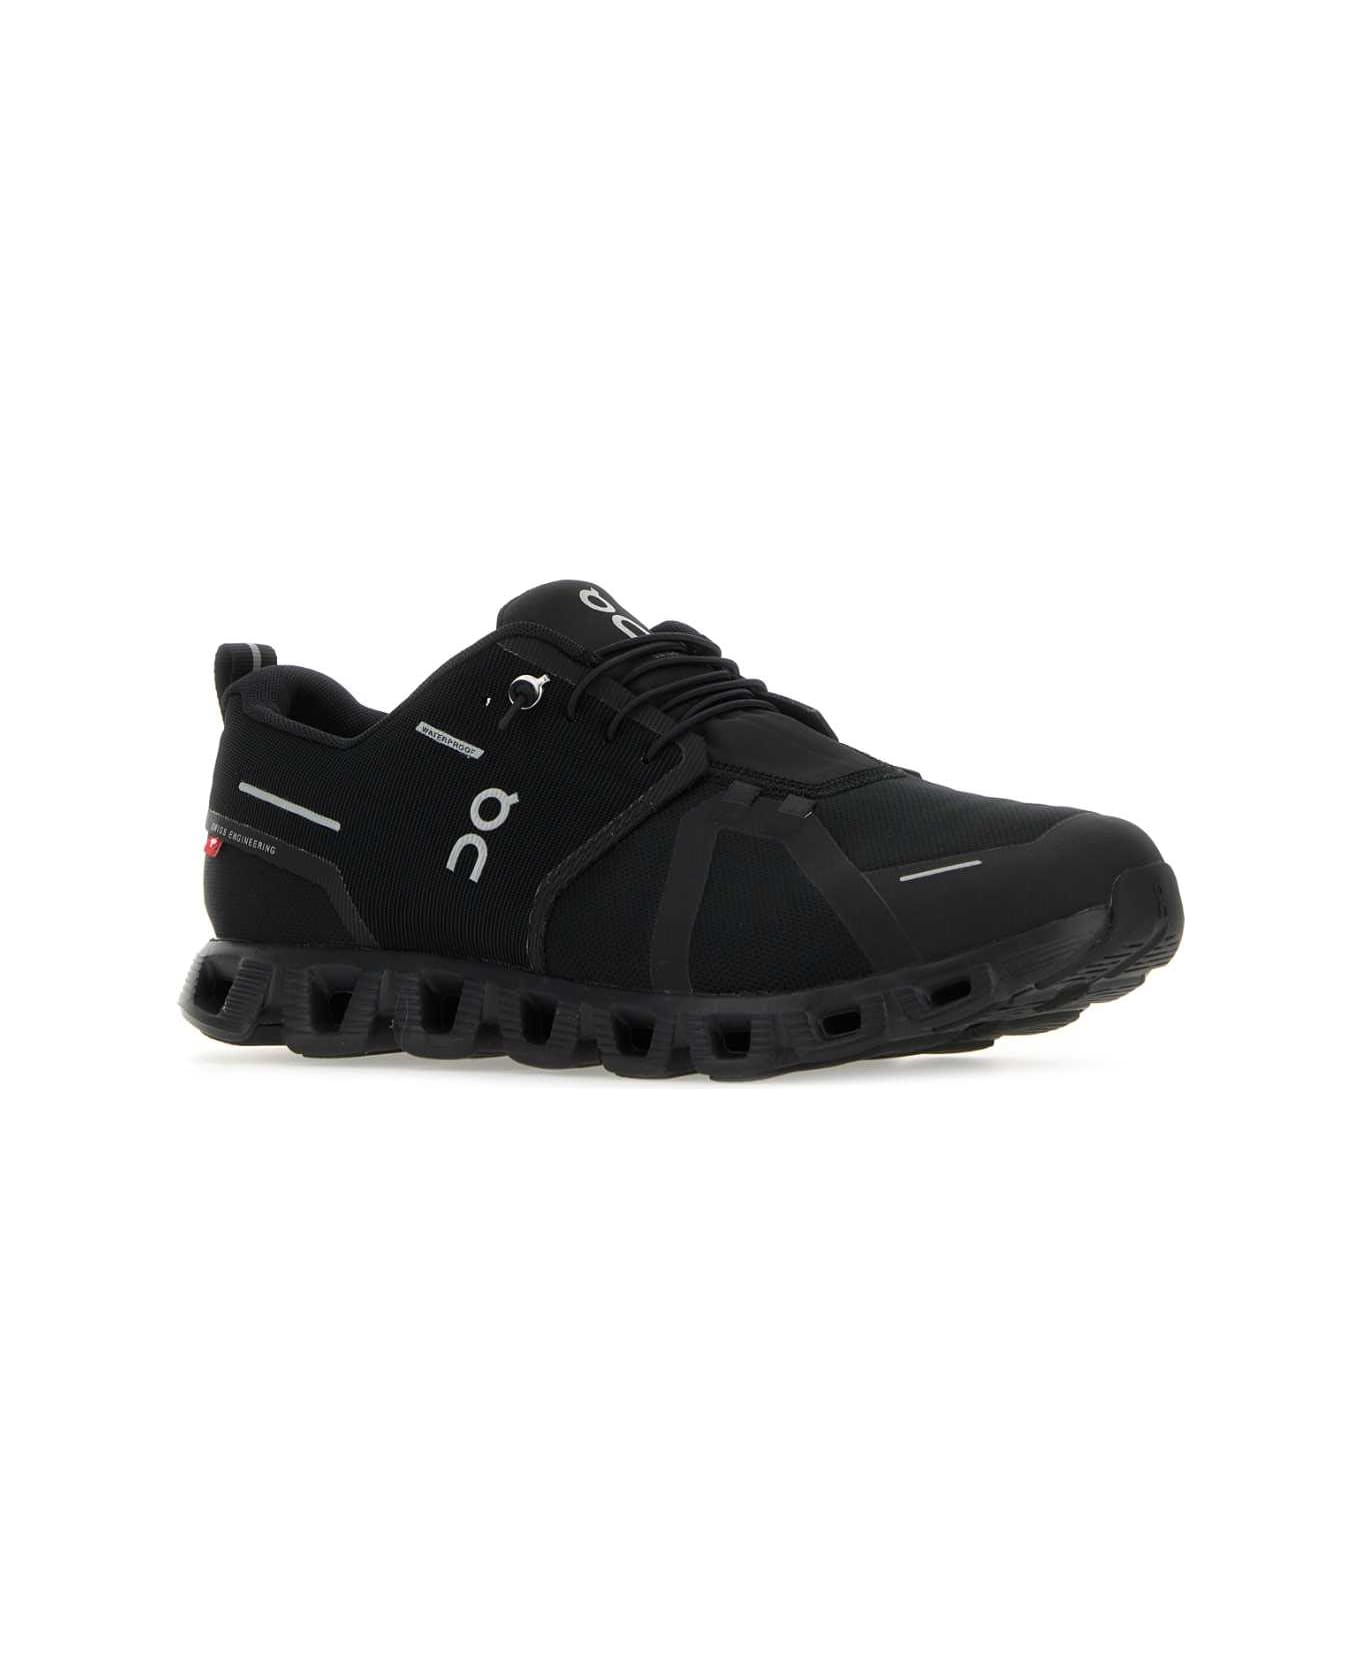 ON Black Mesh Cloud 5 Waterproof Sneakers - ALLBLACK